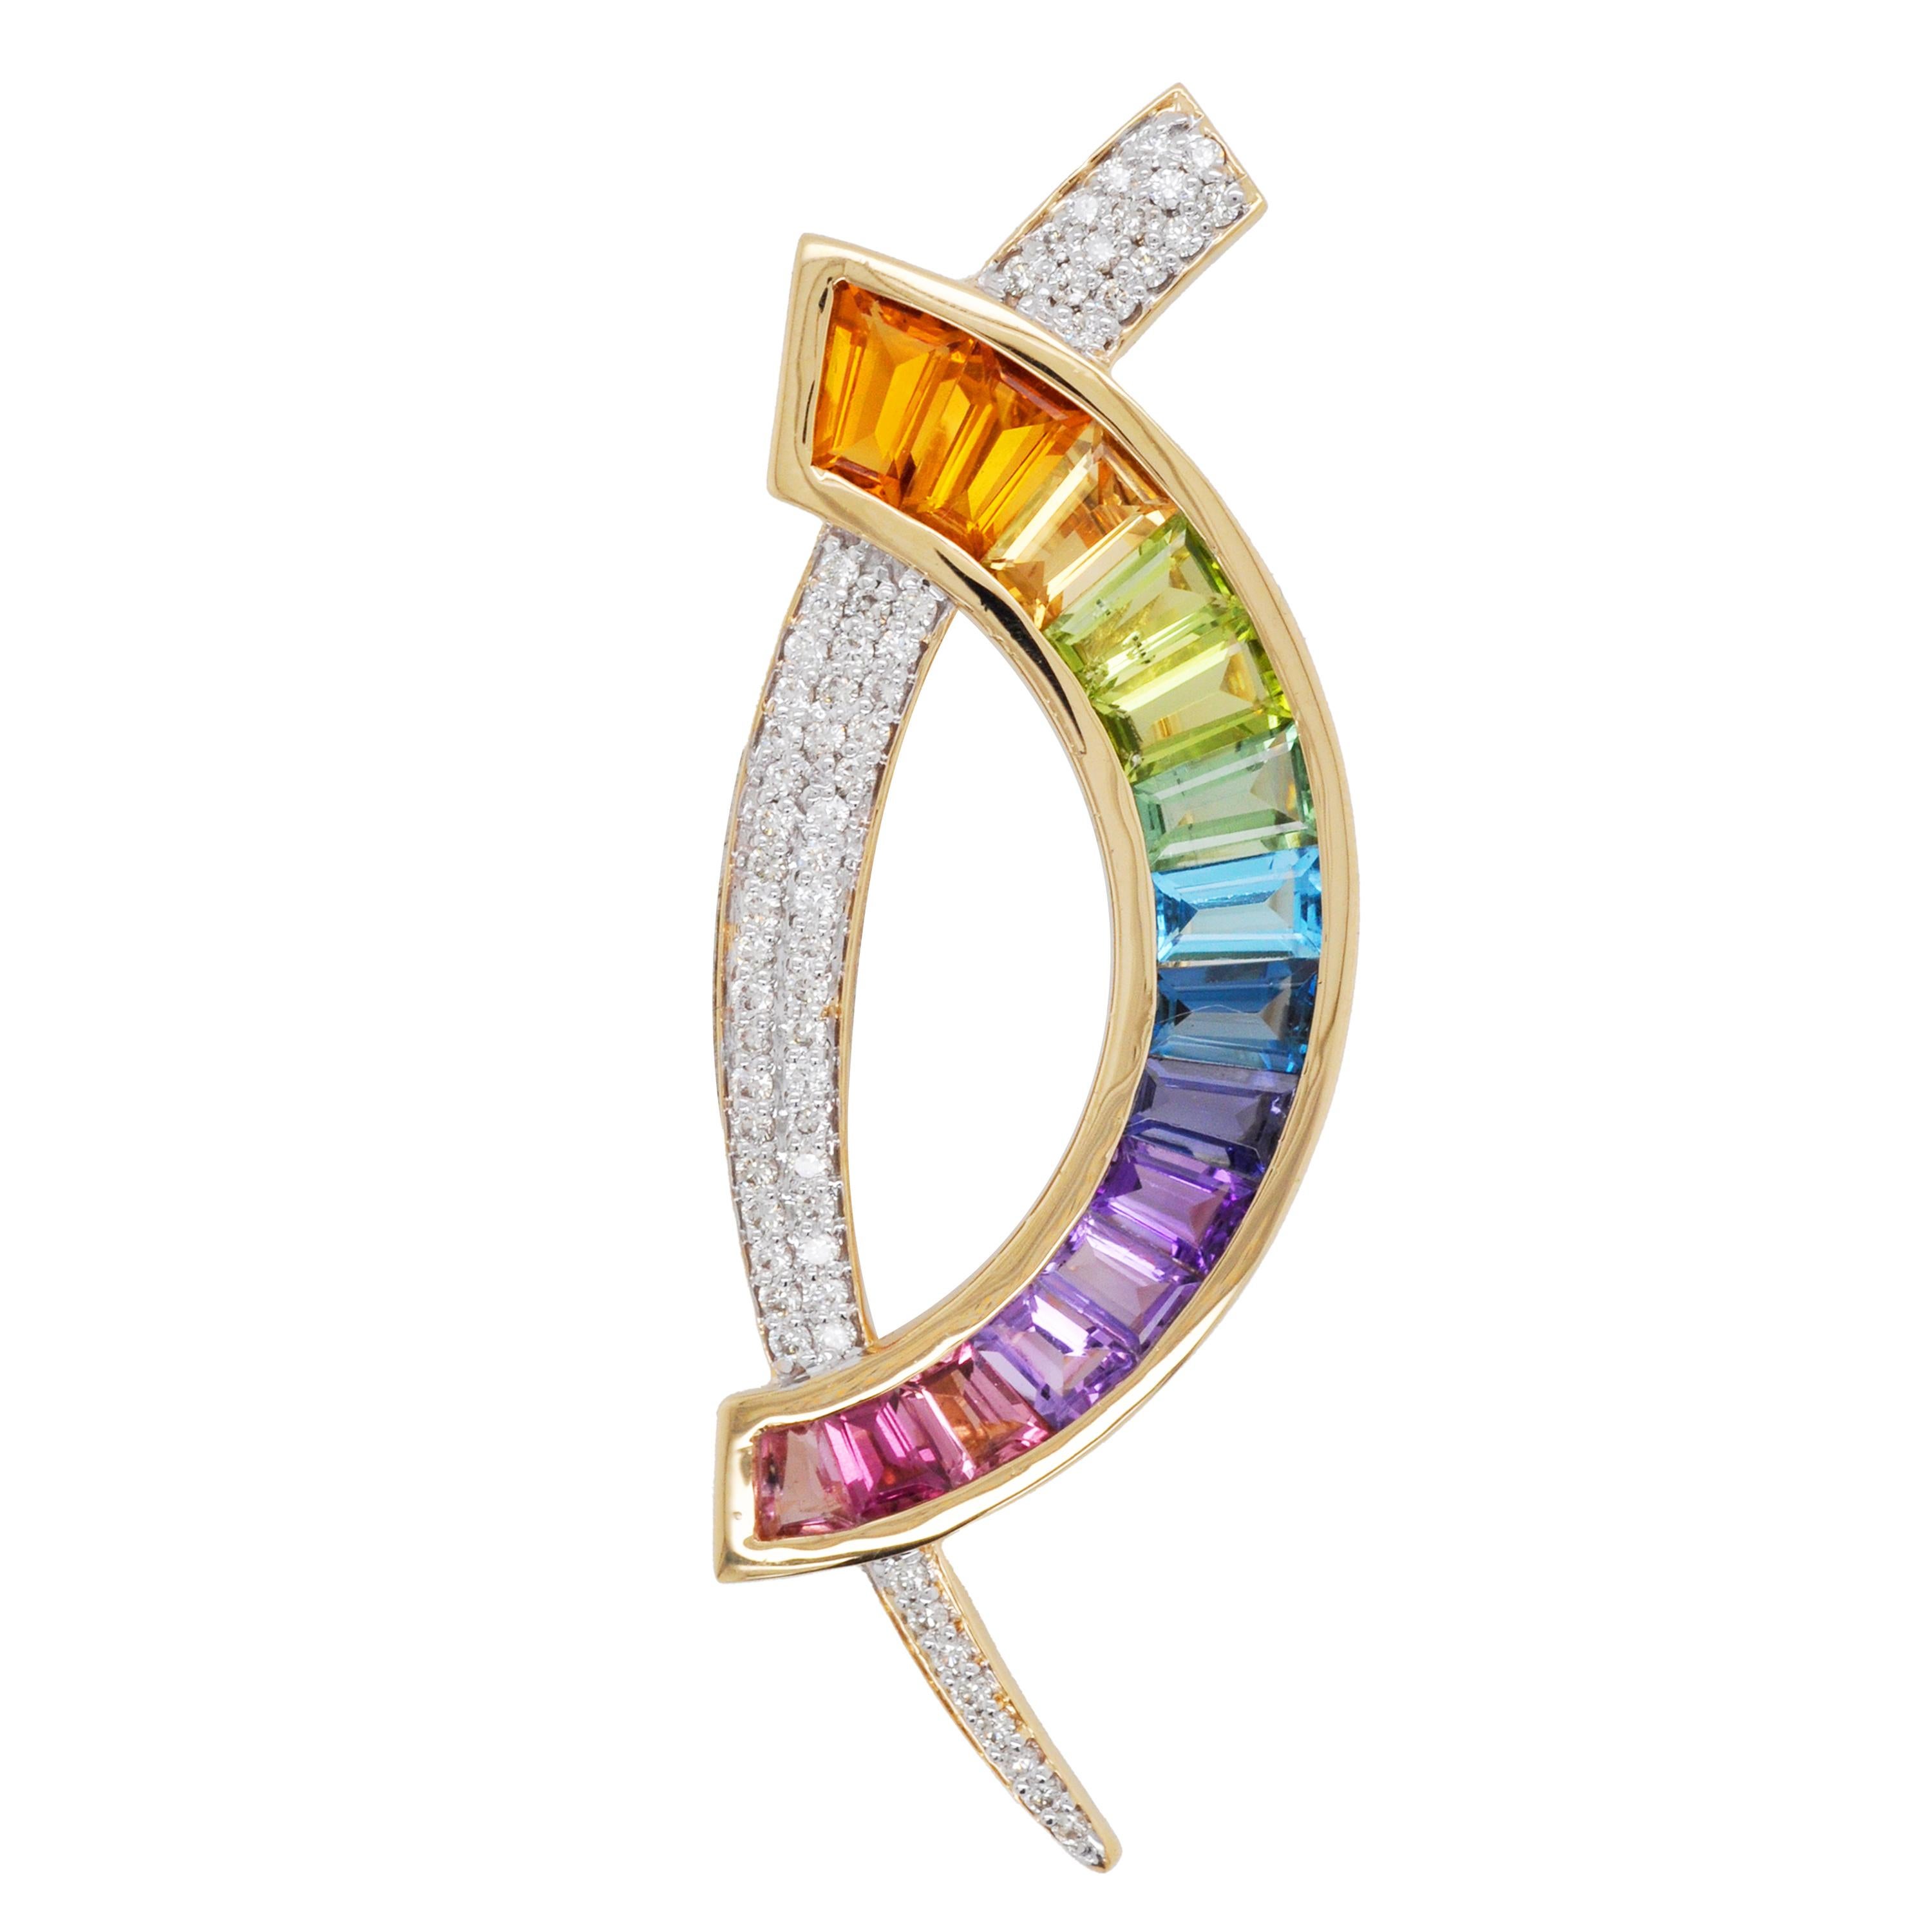 Collier pendentif contemporain en or 18 carats et diamants multicolores arc-en-ciel